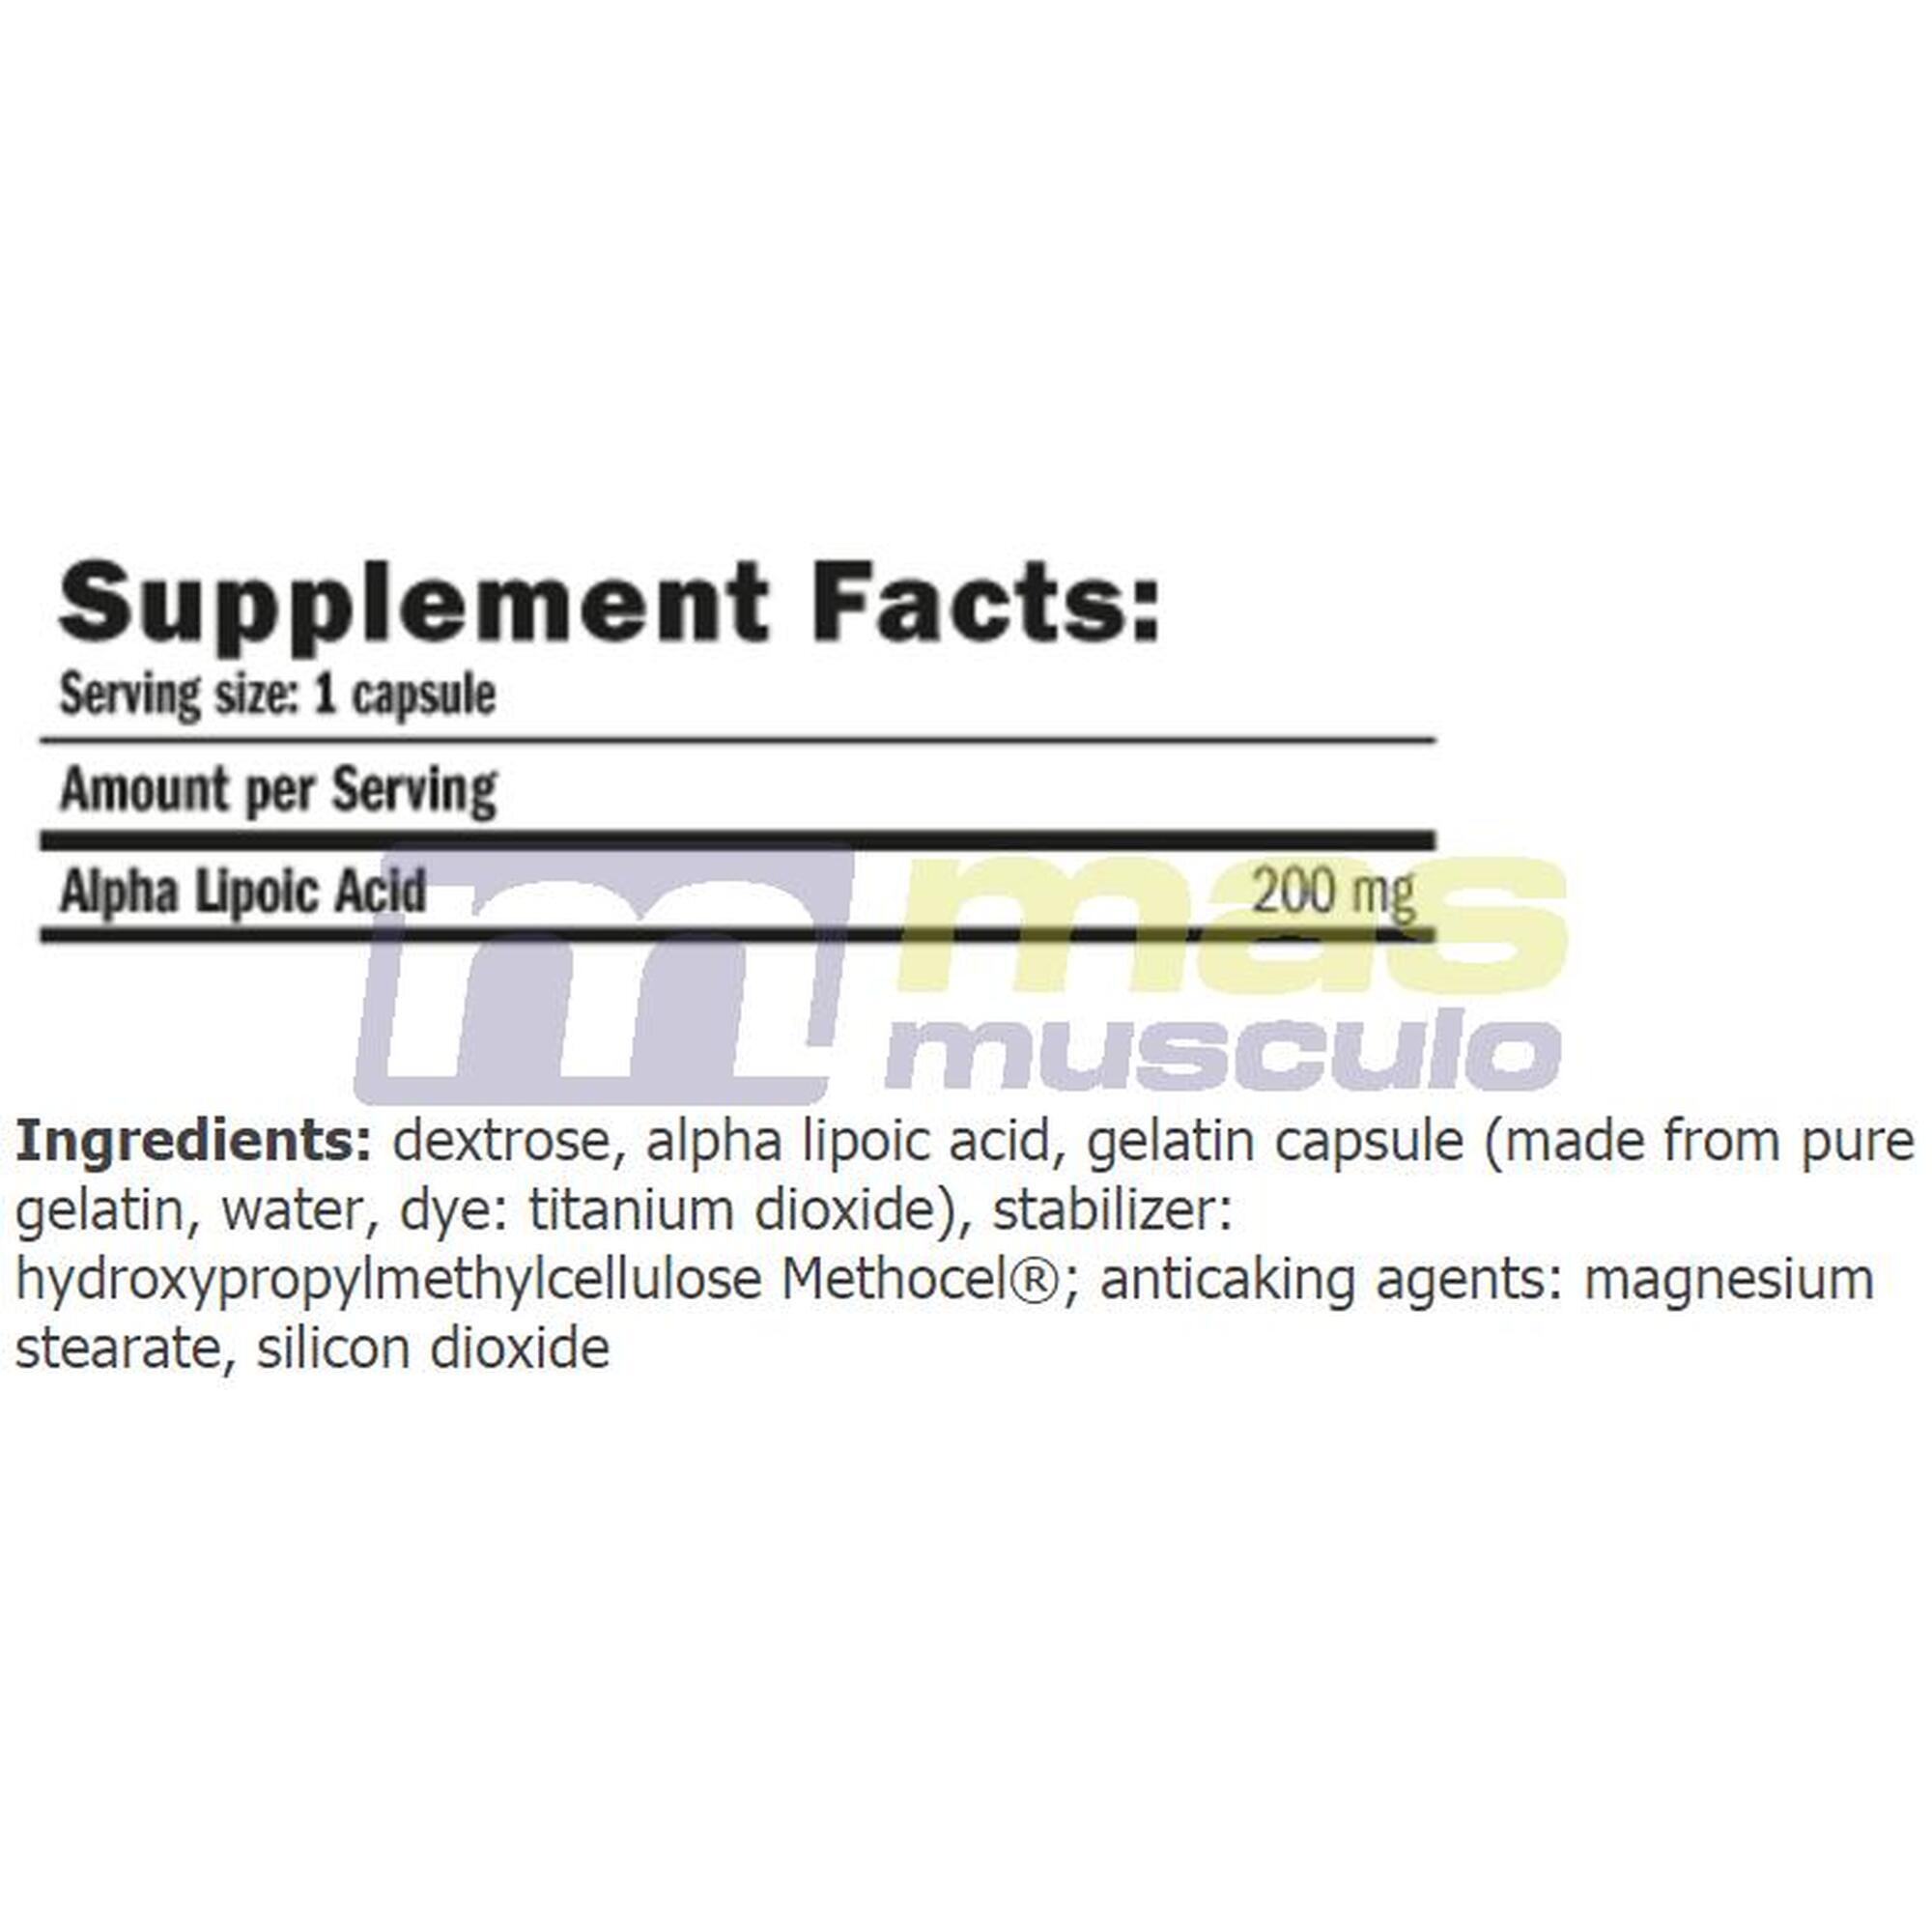 Amix ALA Ácido Alfa Lipóico 60 Caps / Antioxidante Natural